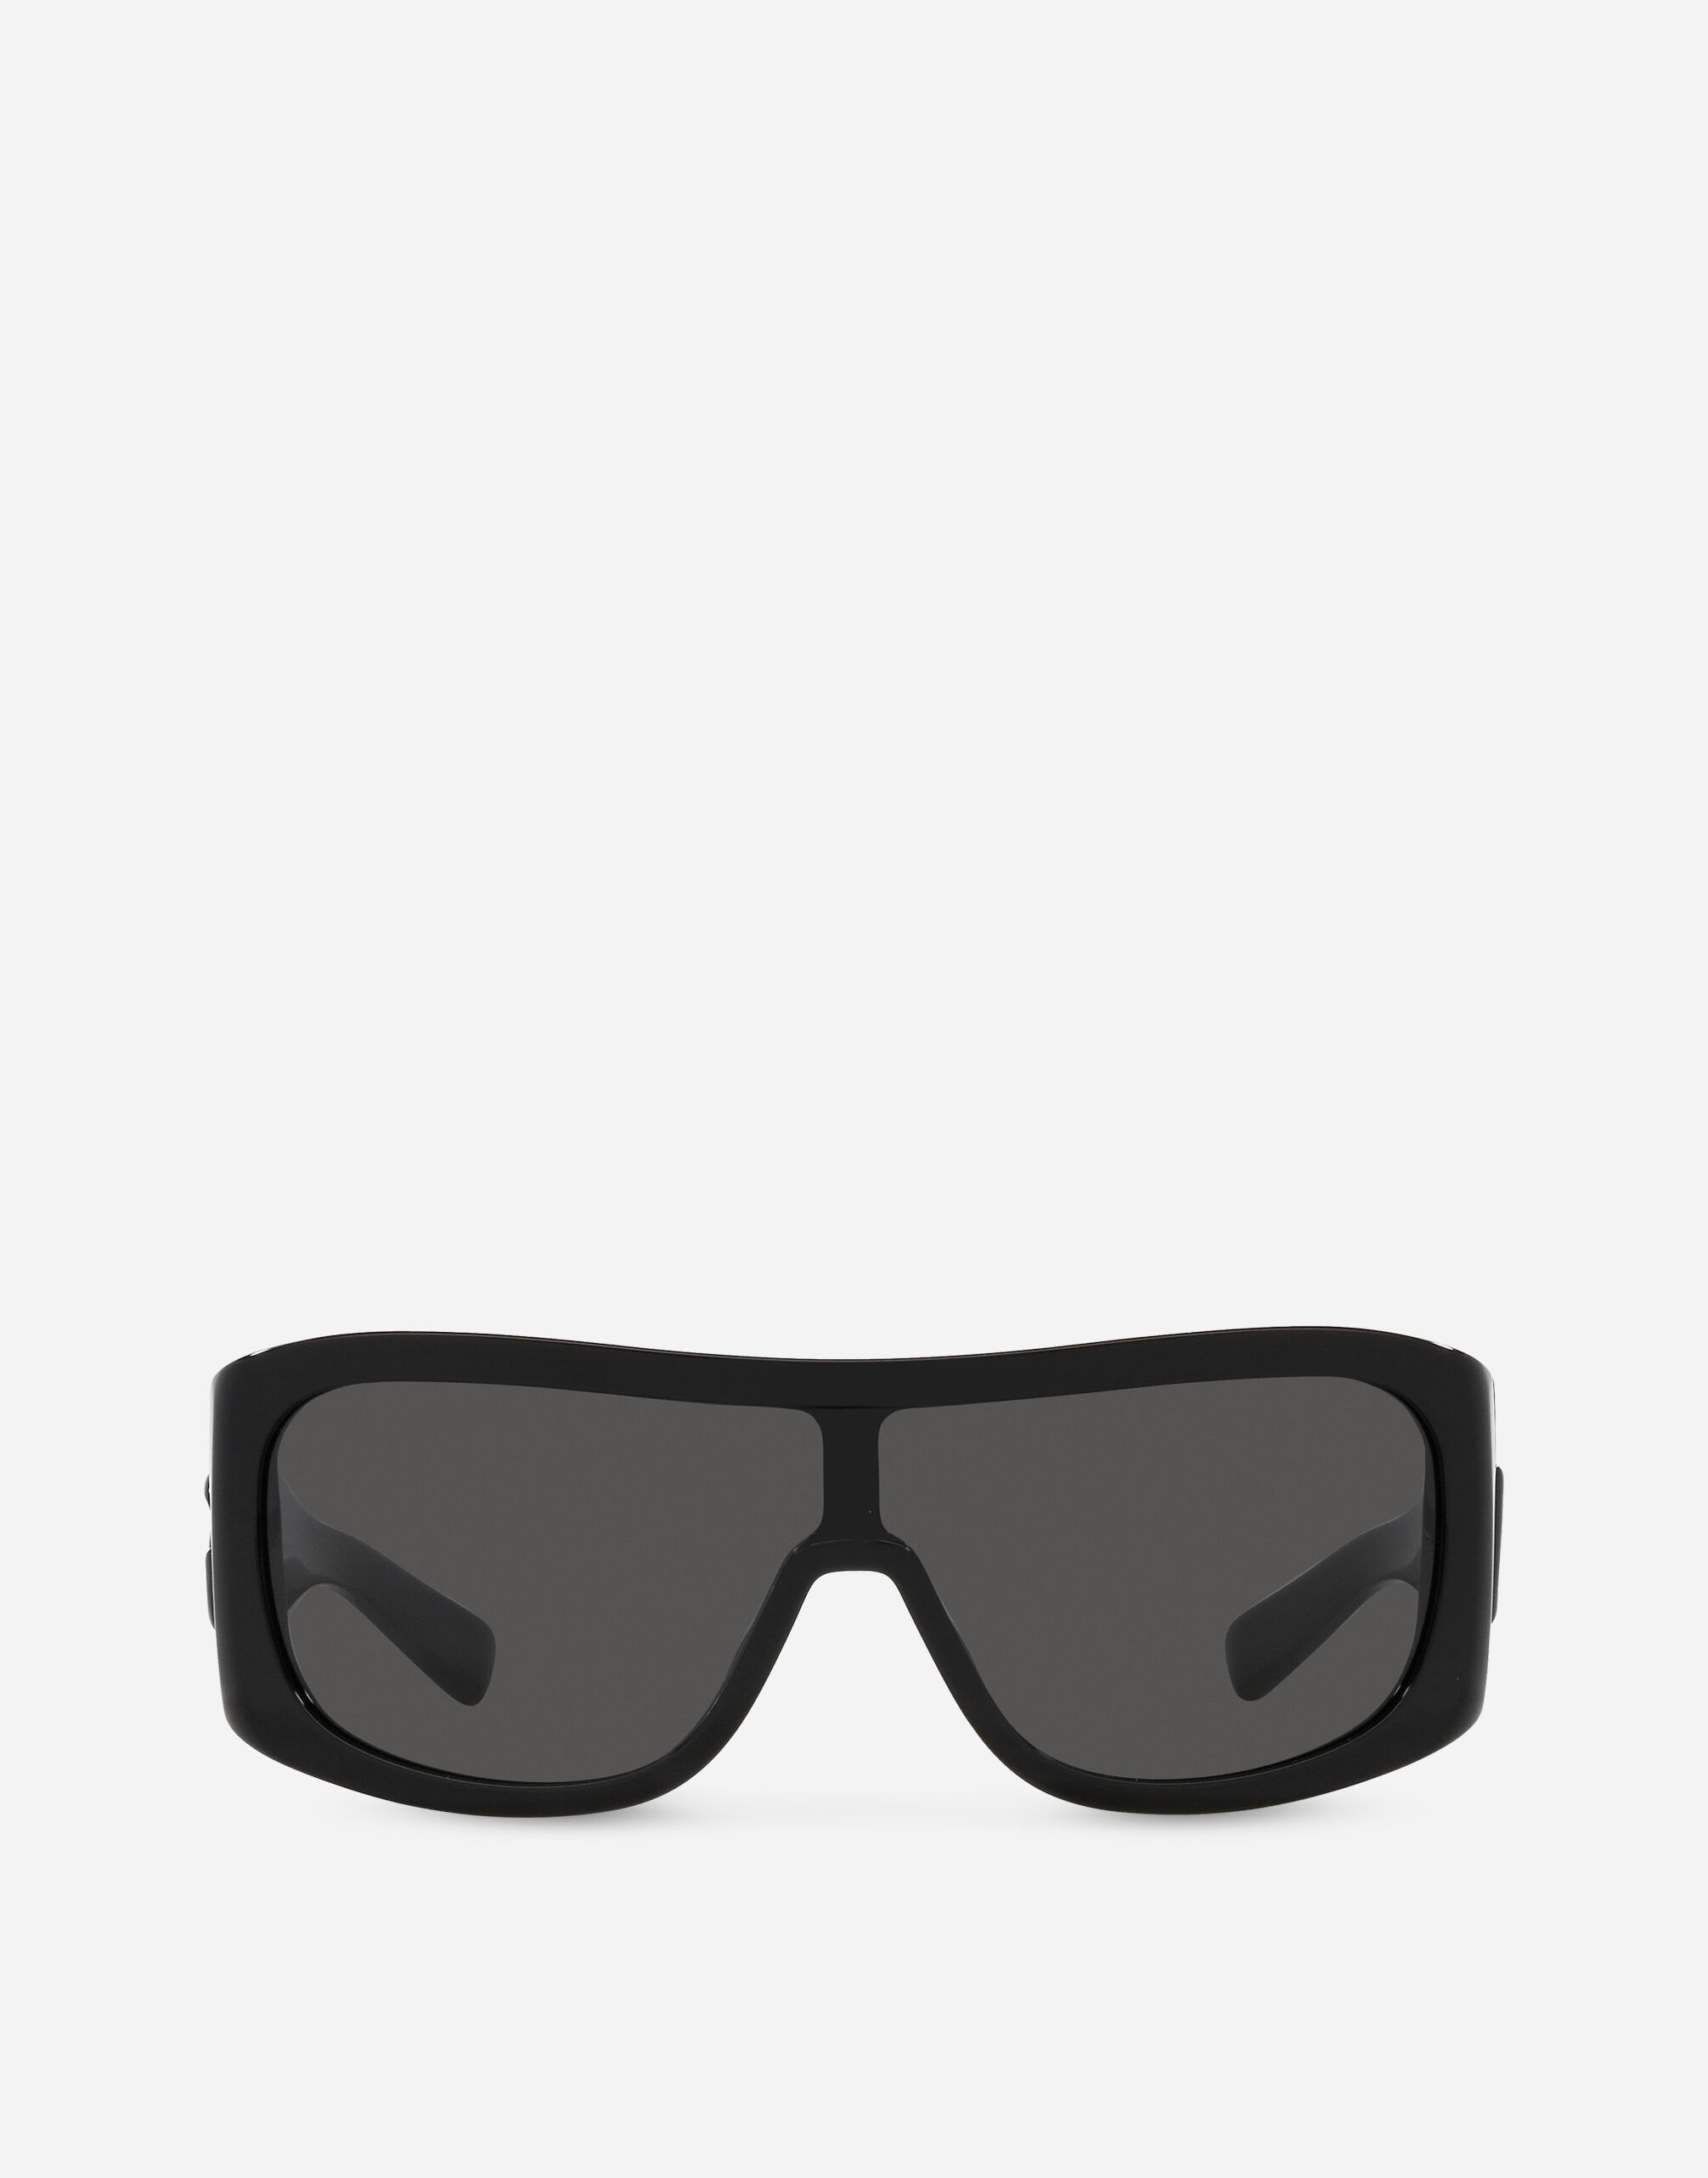 Dolce & Gabbana DG crossed sunglasses Black VG447AVP187